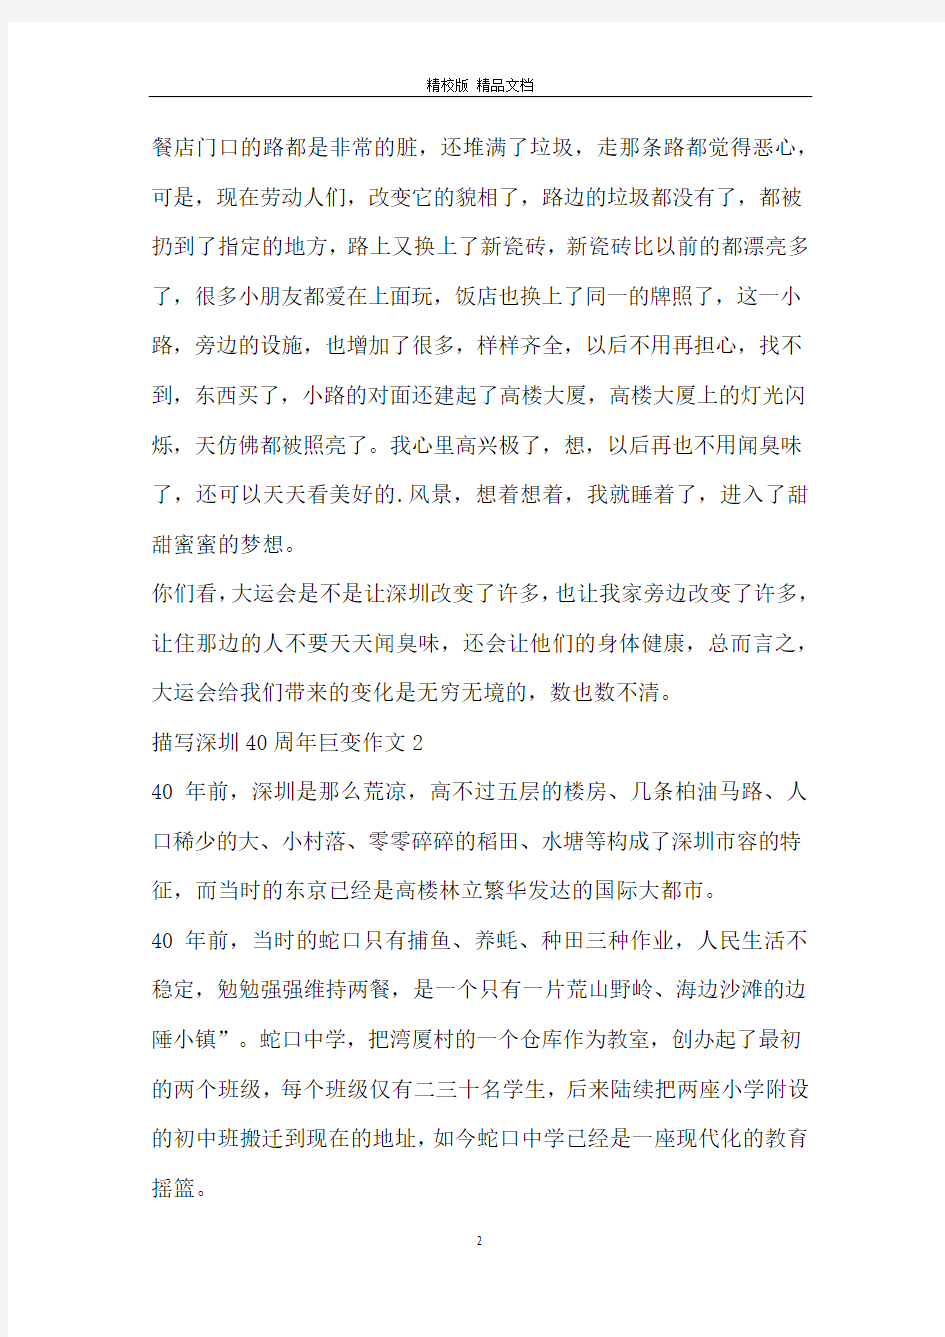 描写深圳40周年巨变作文_深圳经济特区的40岁生日作文